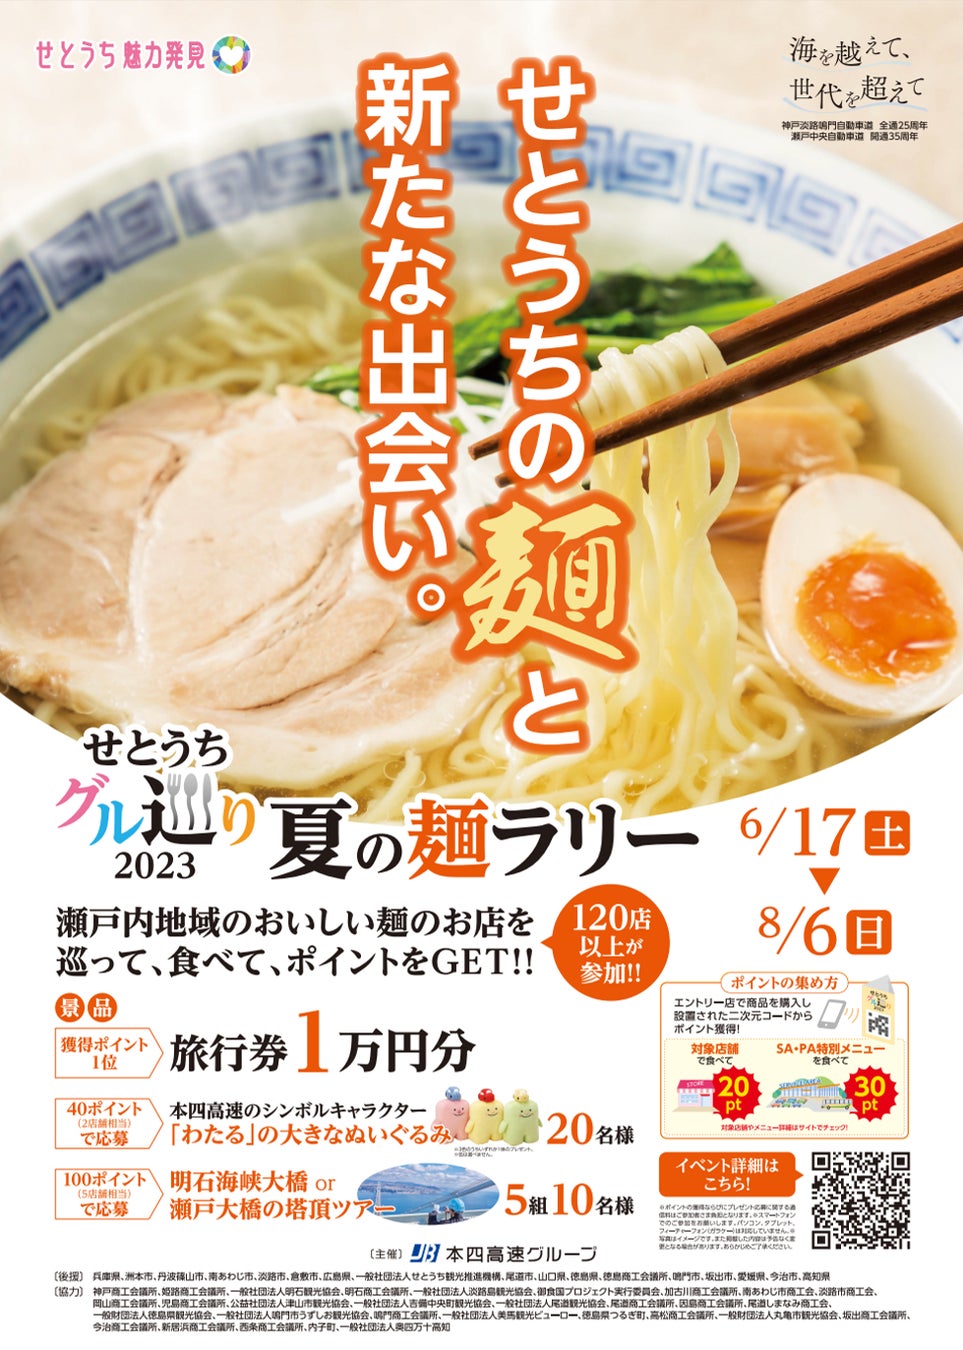 京都駅で1日3,000本売れる「串わらび」の新味がこの夏、京都駅限定で新発売！ 今までにない『ラムネ』味のわらび餅が京都の暑い夏を涼しく彩ります。